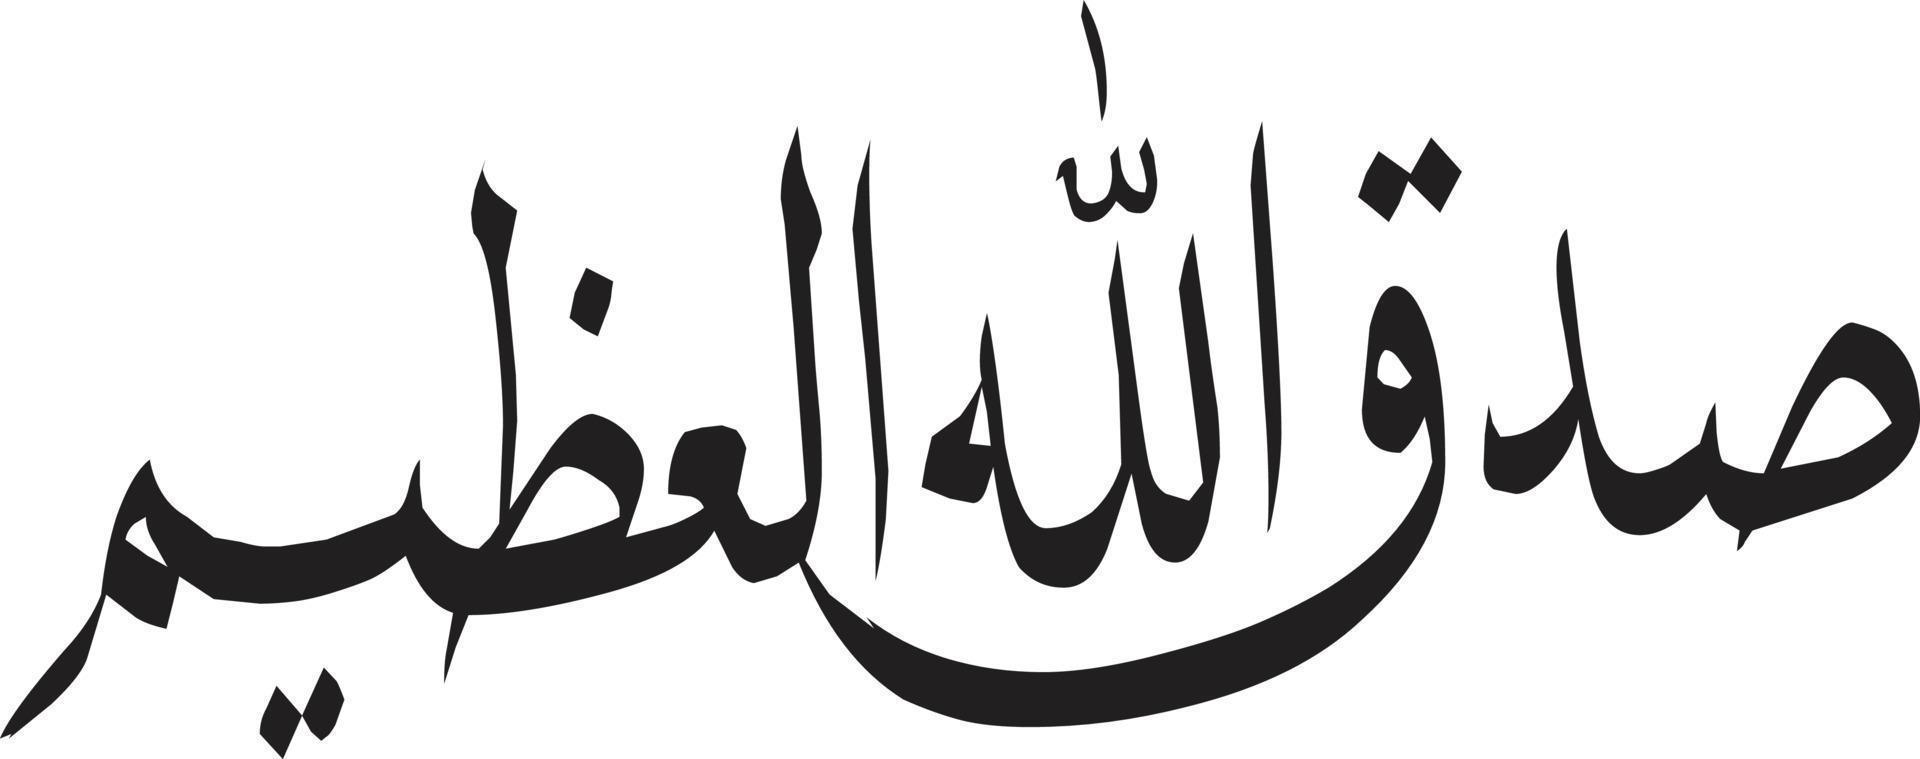 sadey qulazeem calligraphie islamique ourdou vecteur gratuit